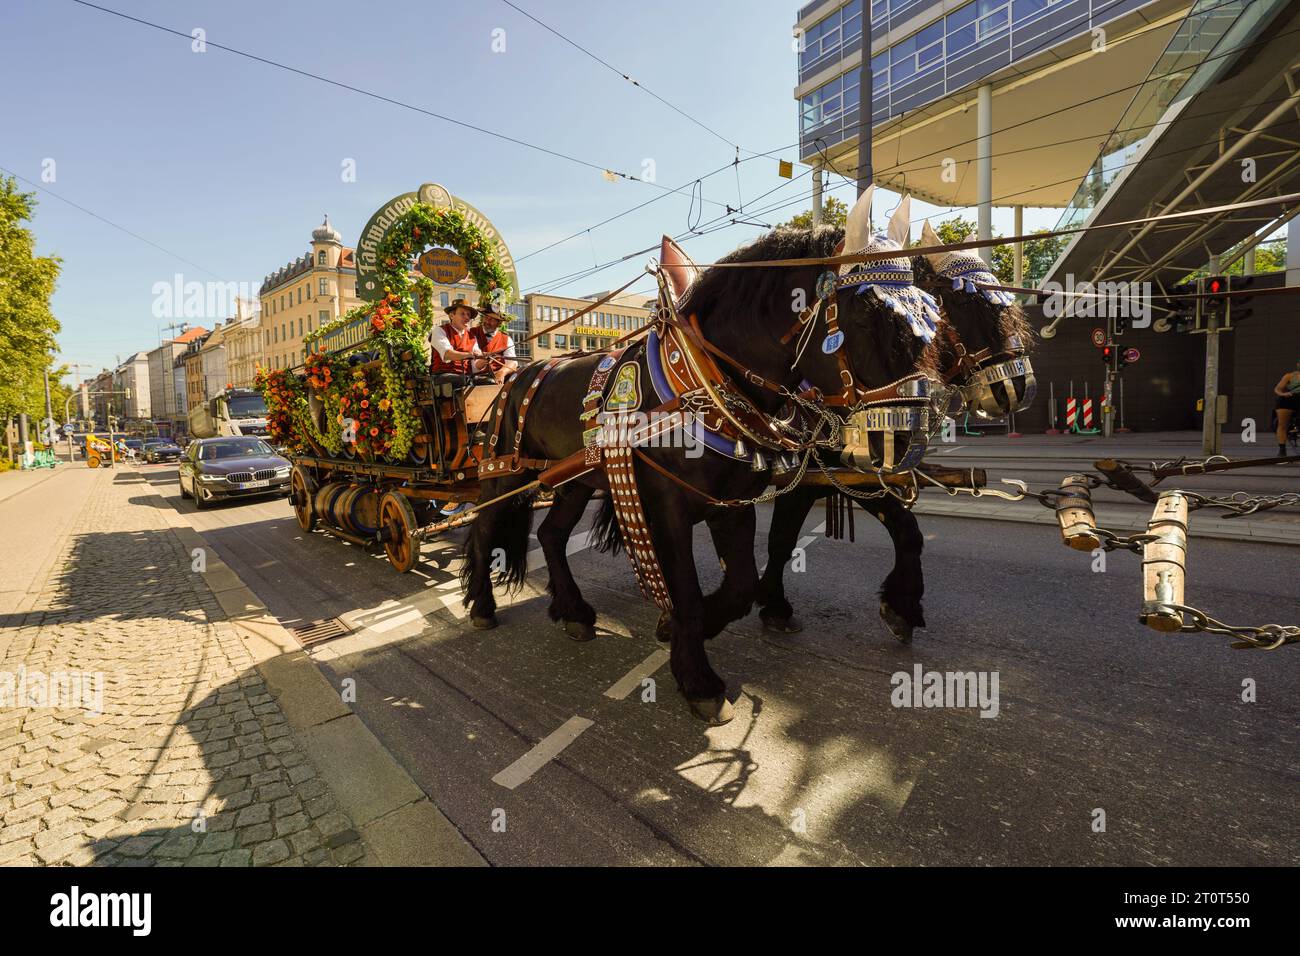 Monaco, Germania, UE - 16 settembre 2023. Oktoberfest Augustiner Beer Brewery Parade Float con carrozza trainata da cavalli, cart con barili di birra sulla strada Foto Stock